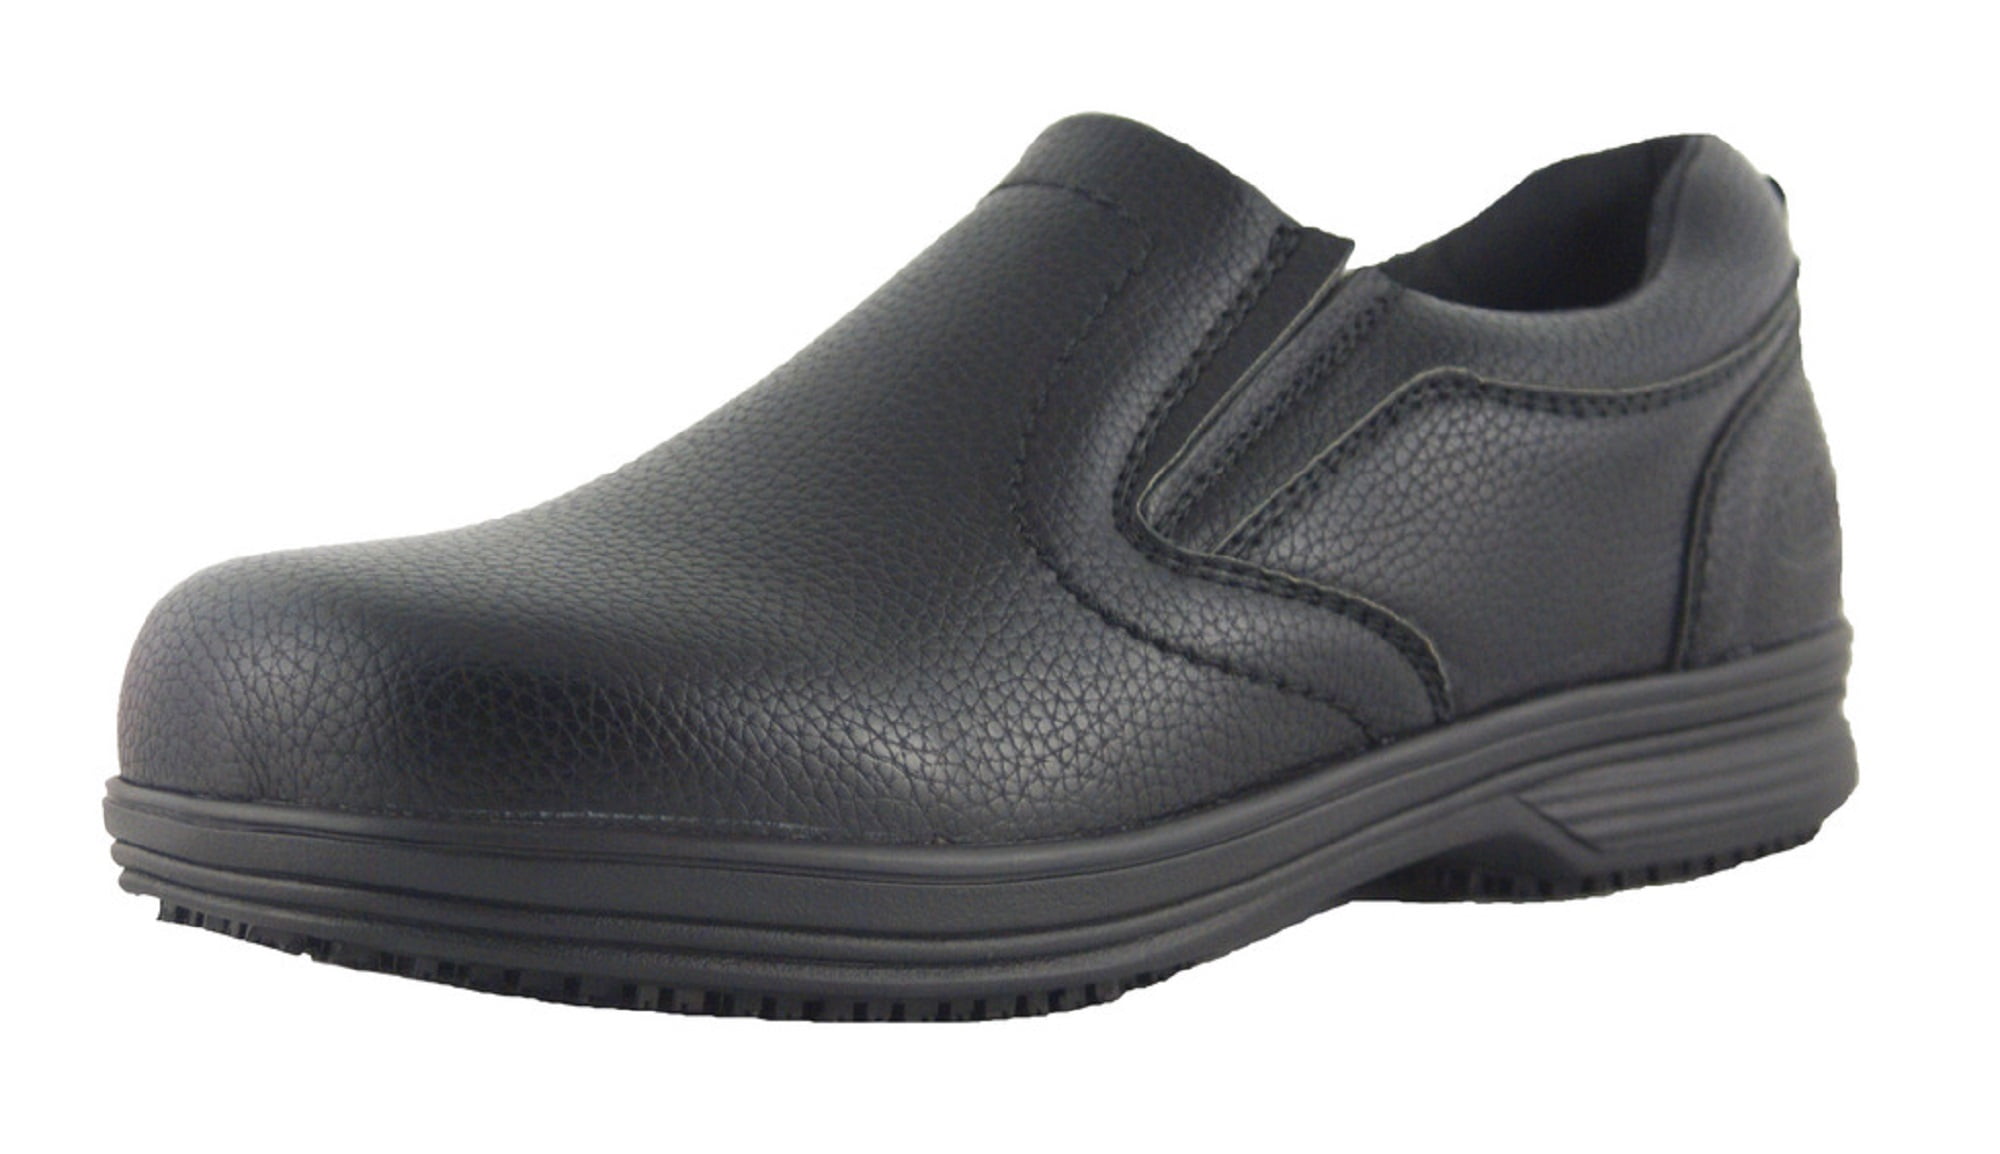 OwnShoe - OwnShoe Men's Slip and Oil Resistant Non Slip Slip On Leather ...